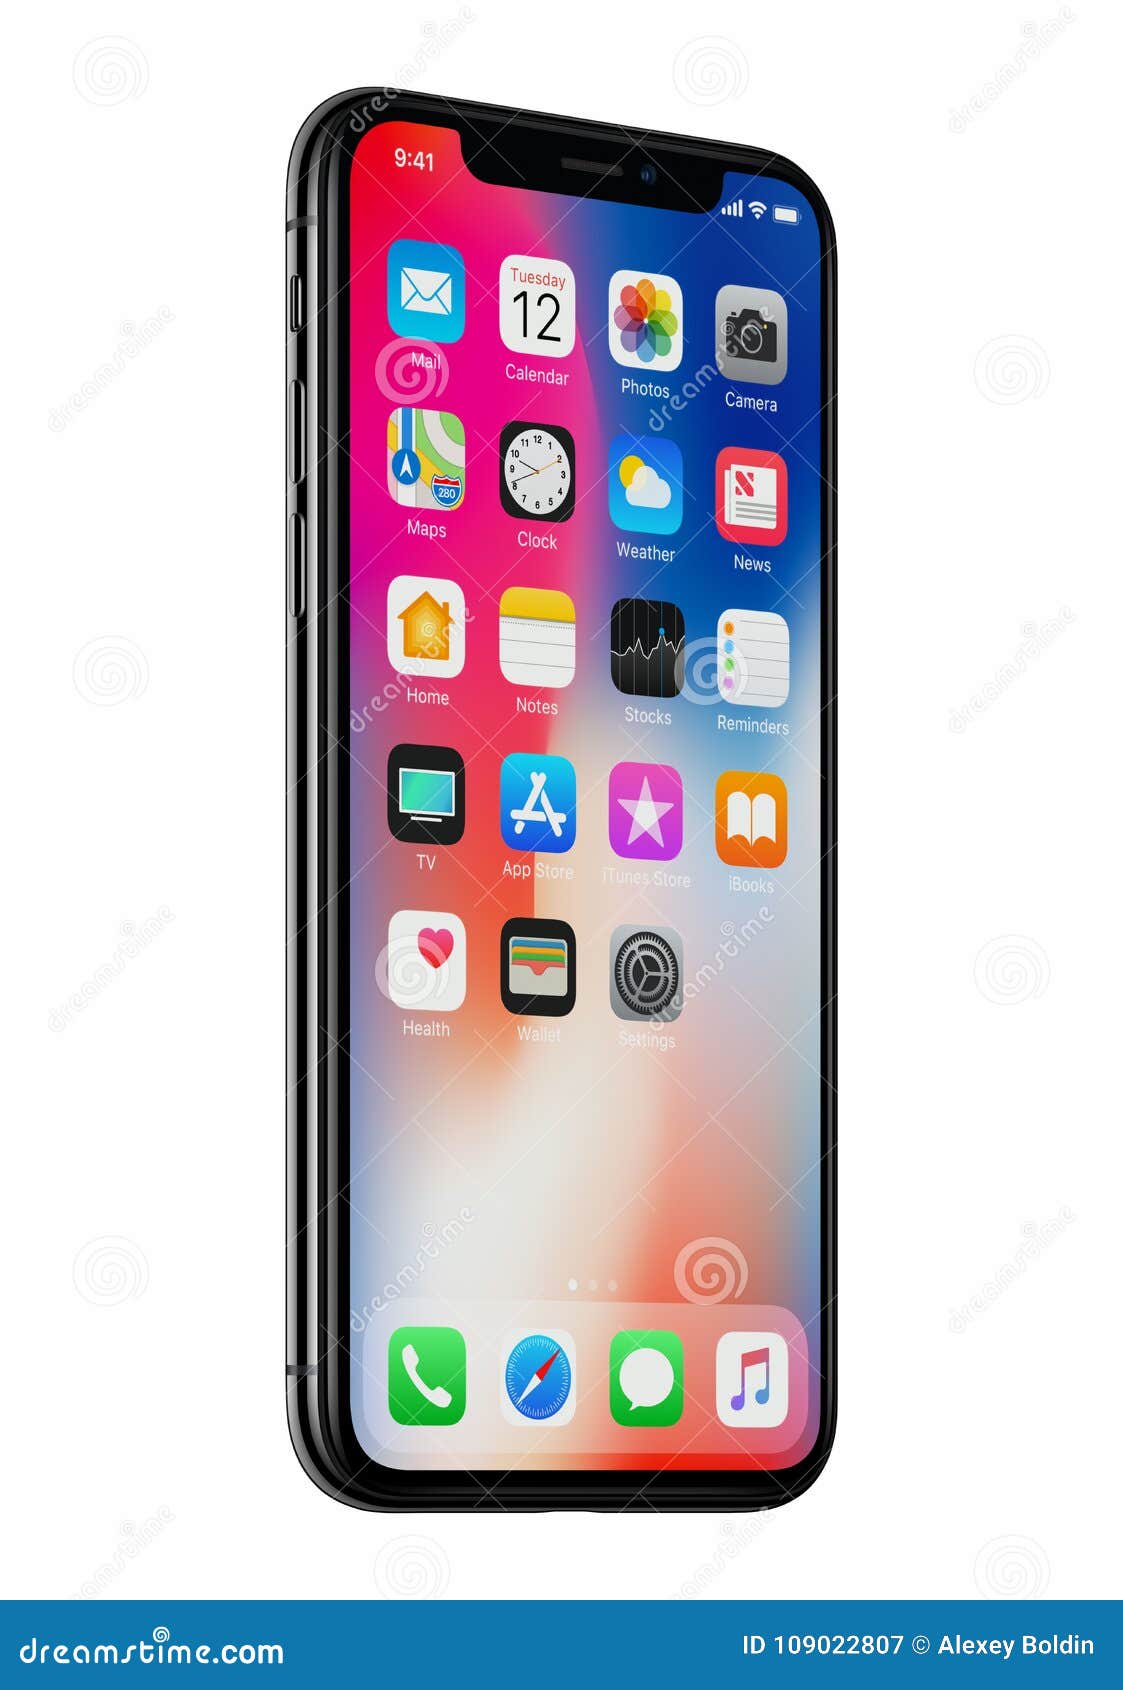 iPhone X: Sở hữu cho mình chiếc điện thoại iPhone X tuyệt đẹp, bạn không chỉ trải nghiệm được hiệu suất vượt trội và tính năng vượt trội, mà còn sở hữu cho mình một thiết kế đặc biệt để phản ánh cá tính trẻ trung của mình.